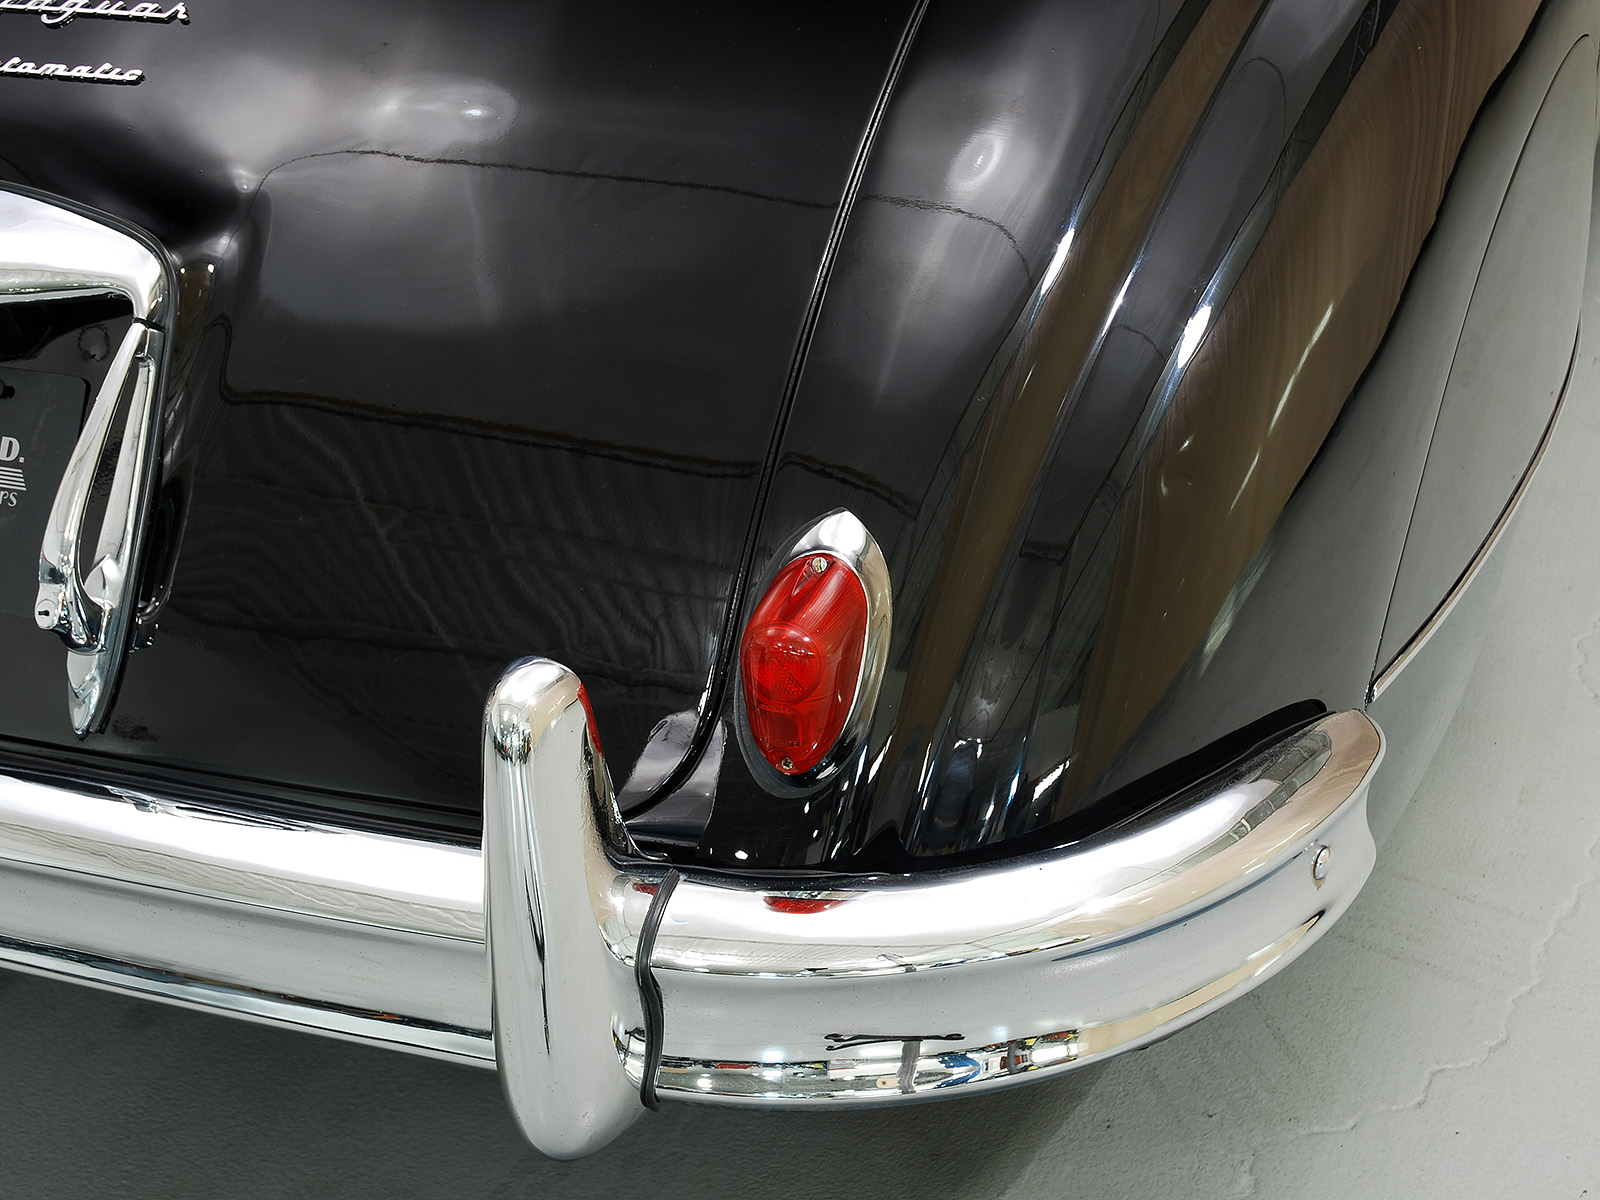 1957 jaguar mark viii luxury